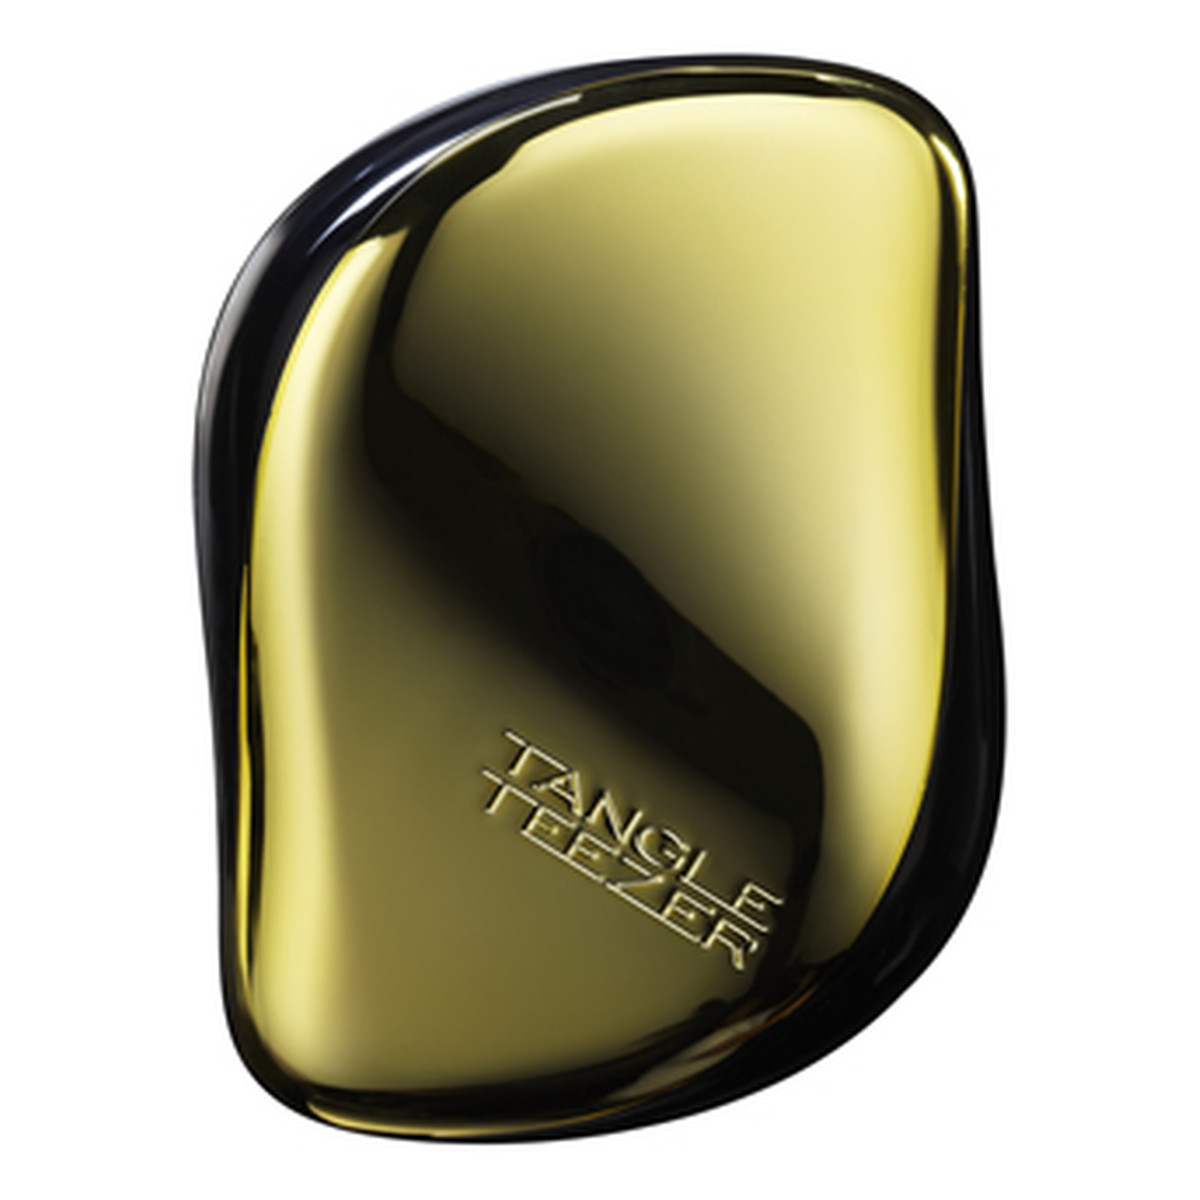 Tangle Teezer Compact Styler Gold Rush Szczotka Do Włosów Złota